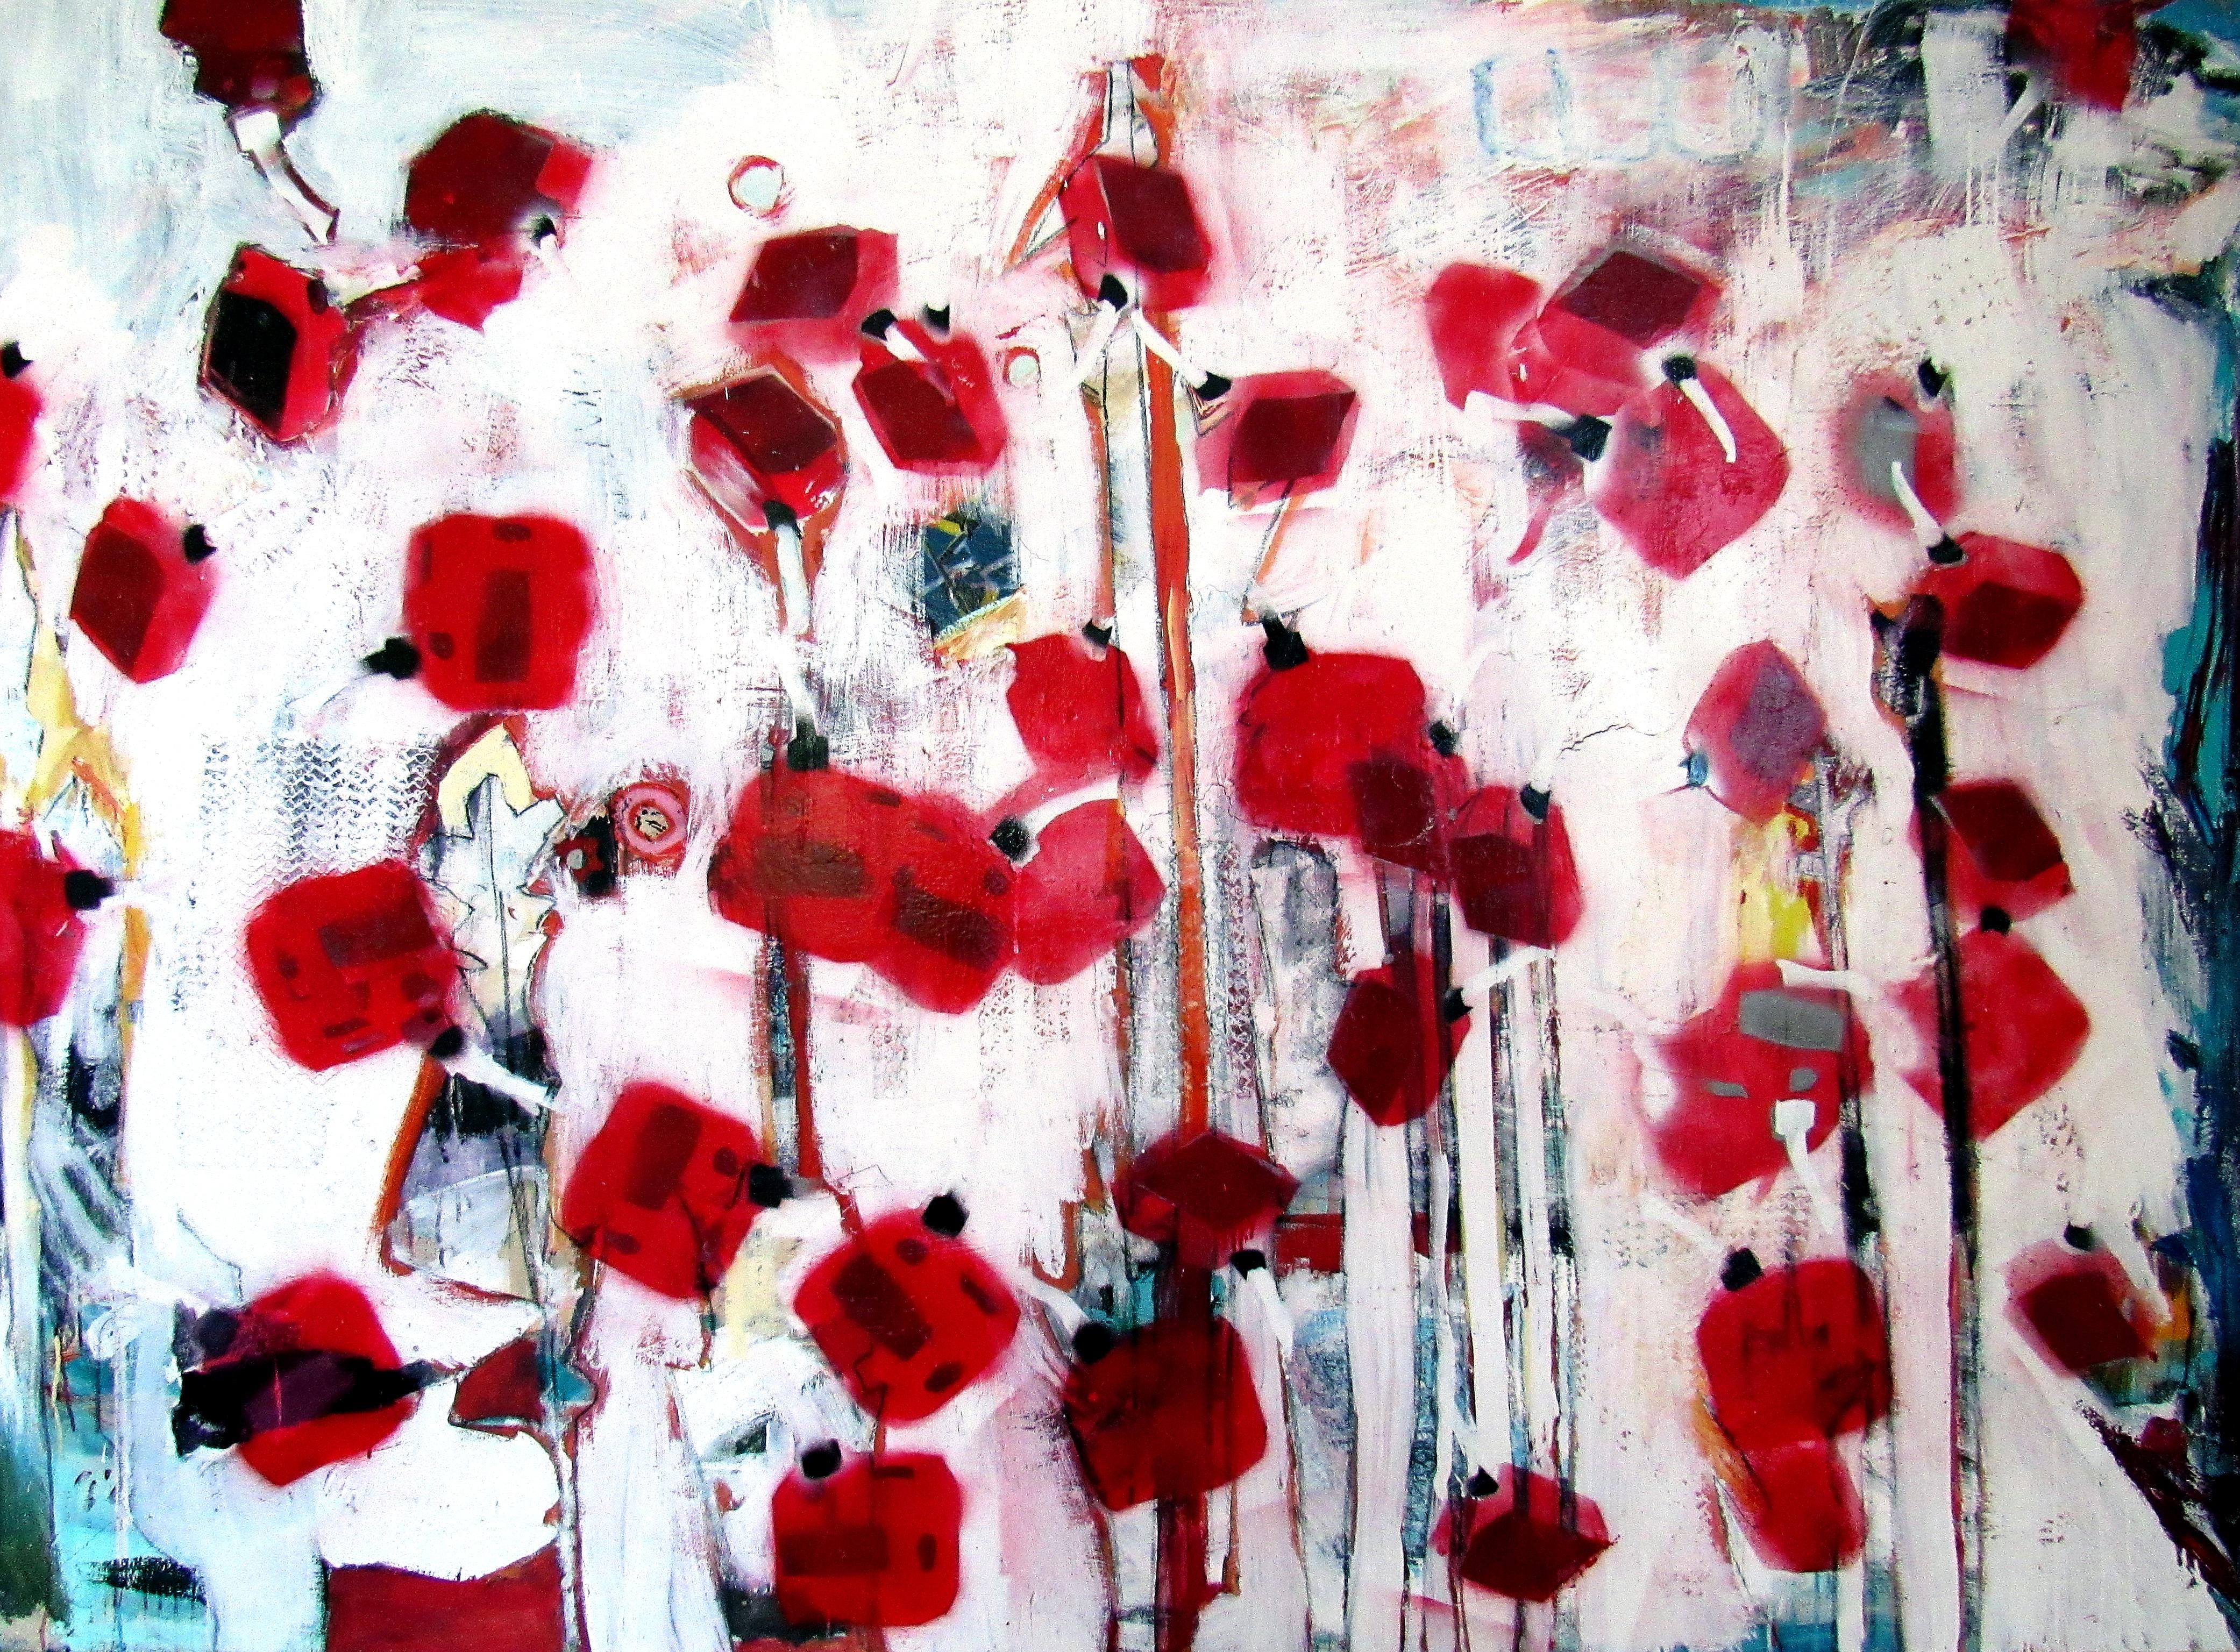 Forest, skurriles abstraktes Gemälde in Rot und Weiß